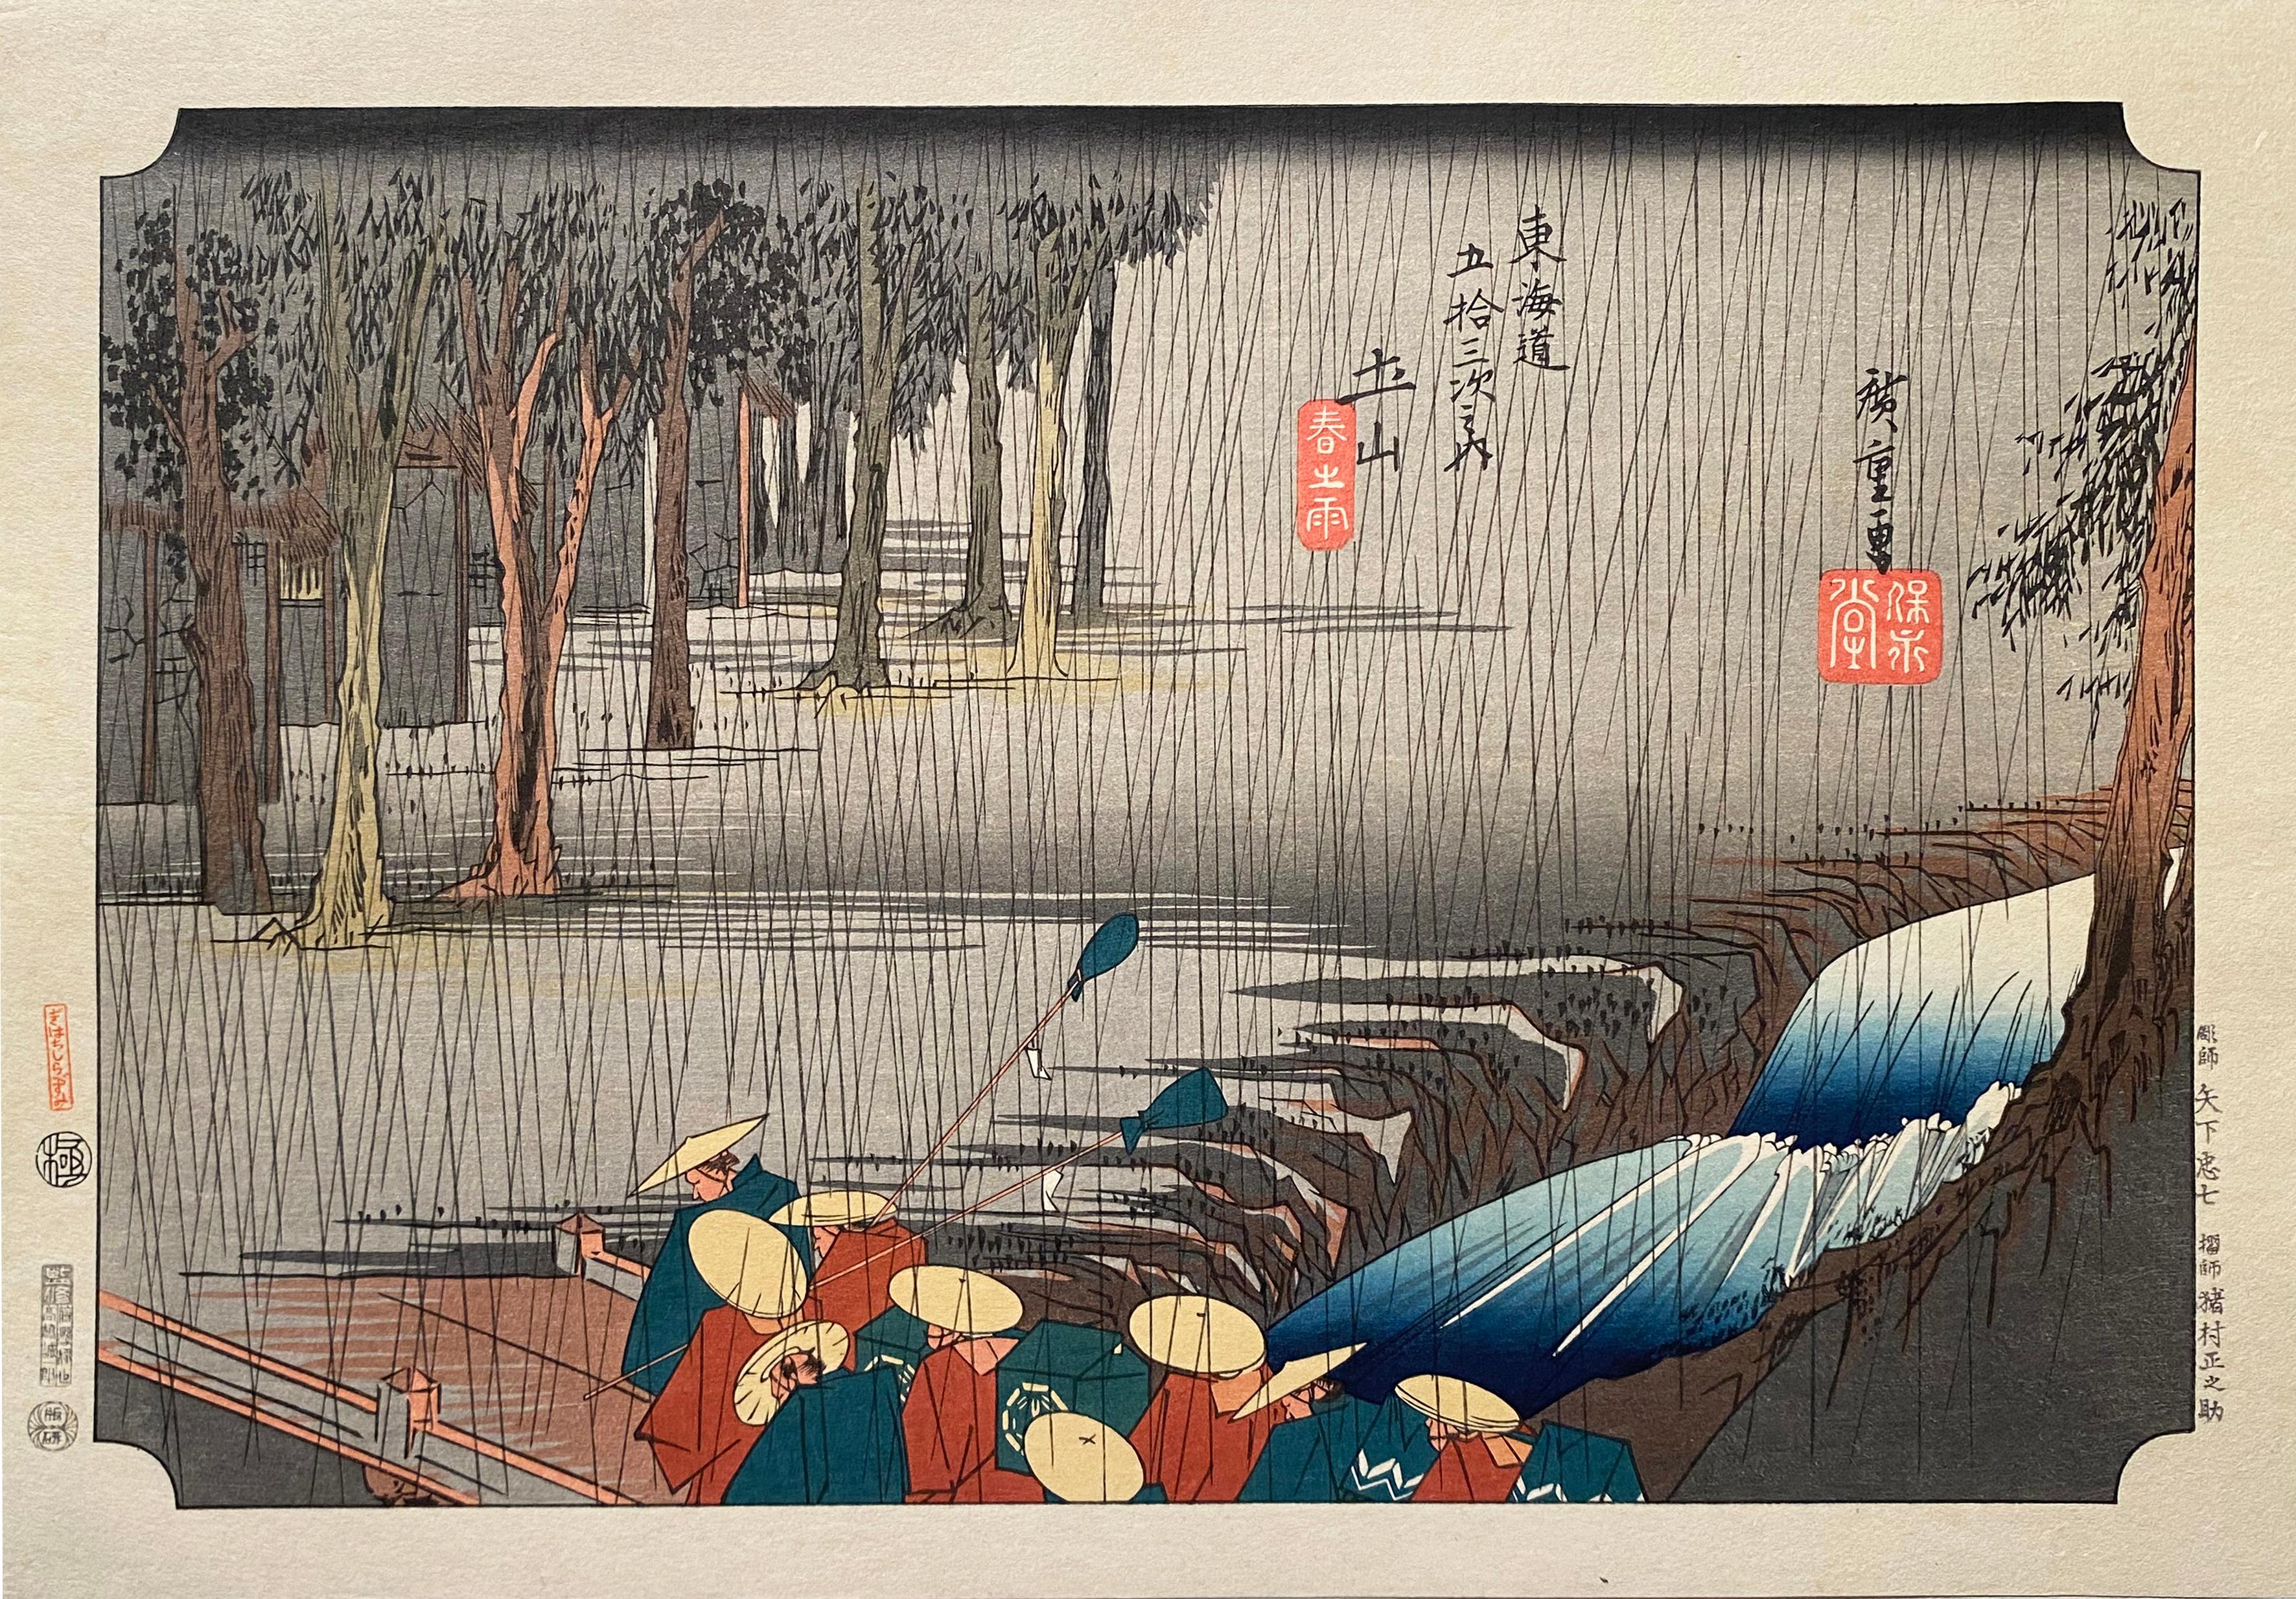 Utagawa Hiroshige (Ando Hiroshige) Landscape Print - 'A View of Tsuchiyama', After Utagawa Hiroshige 歌川廣重, Ukiyo-e Woodblock, Tokaido